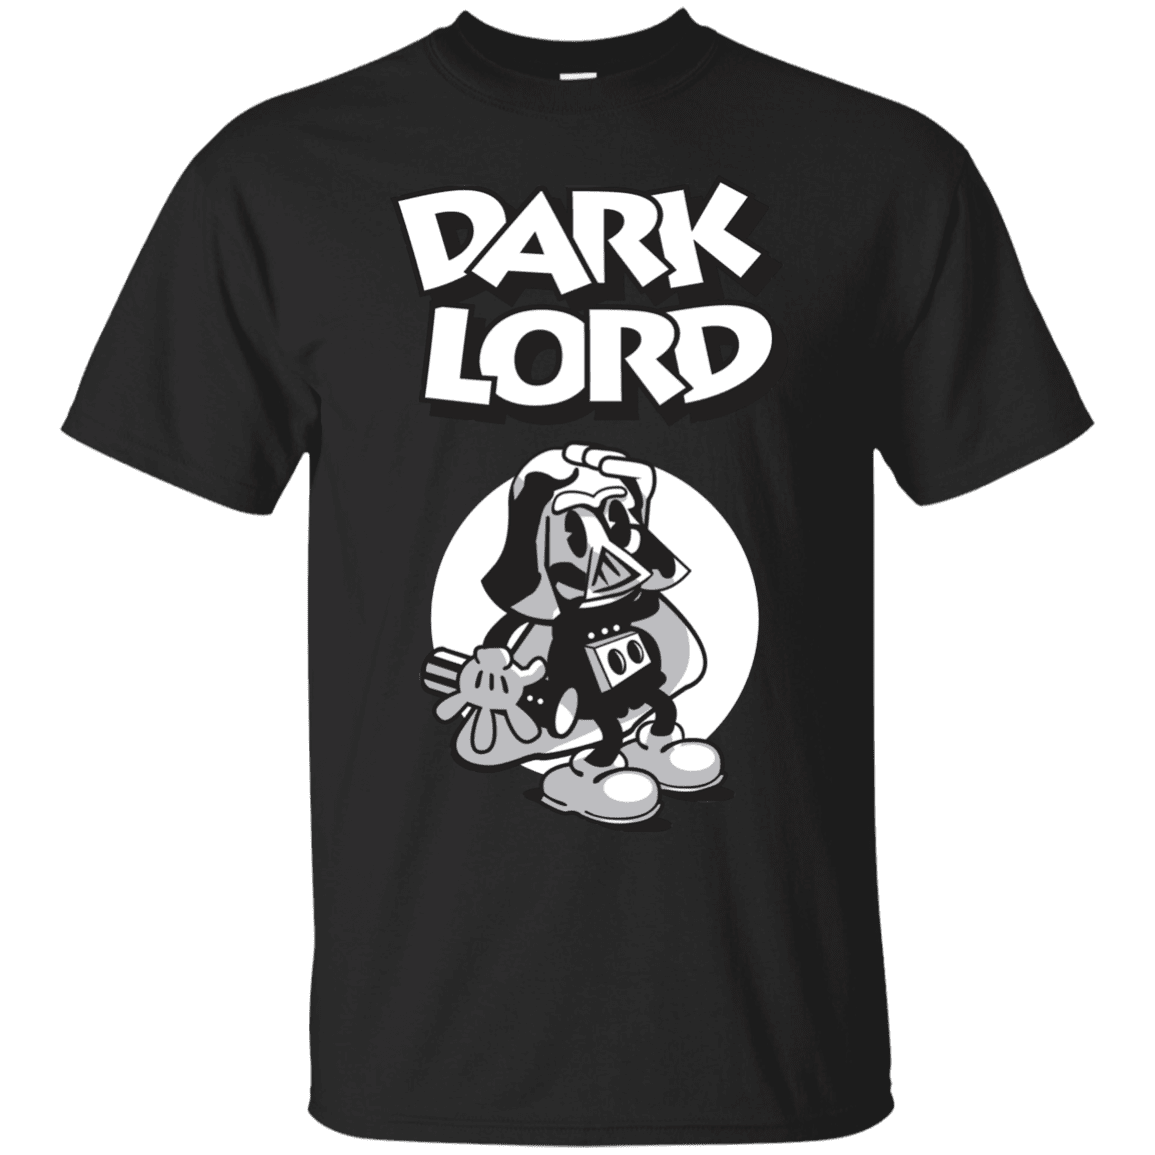 T-Shirts Black / Small Dark Lord T-Shirt